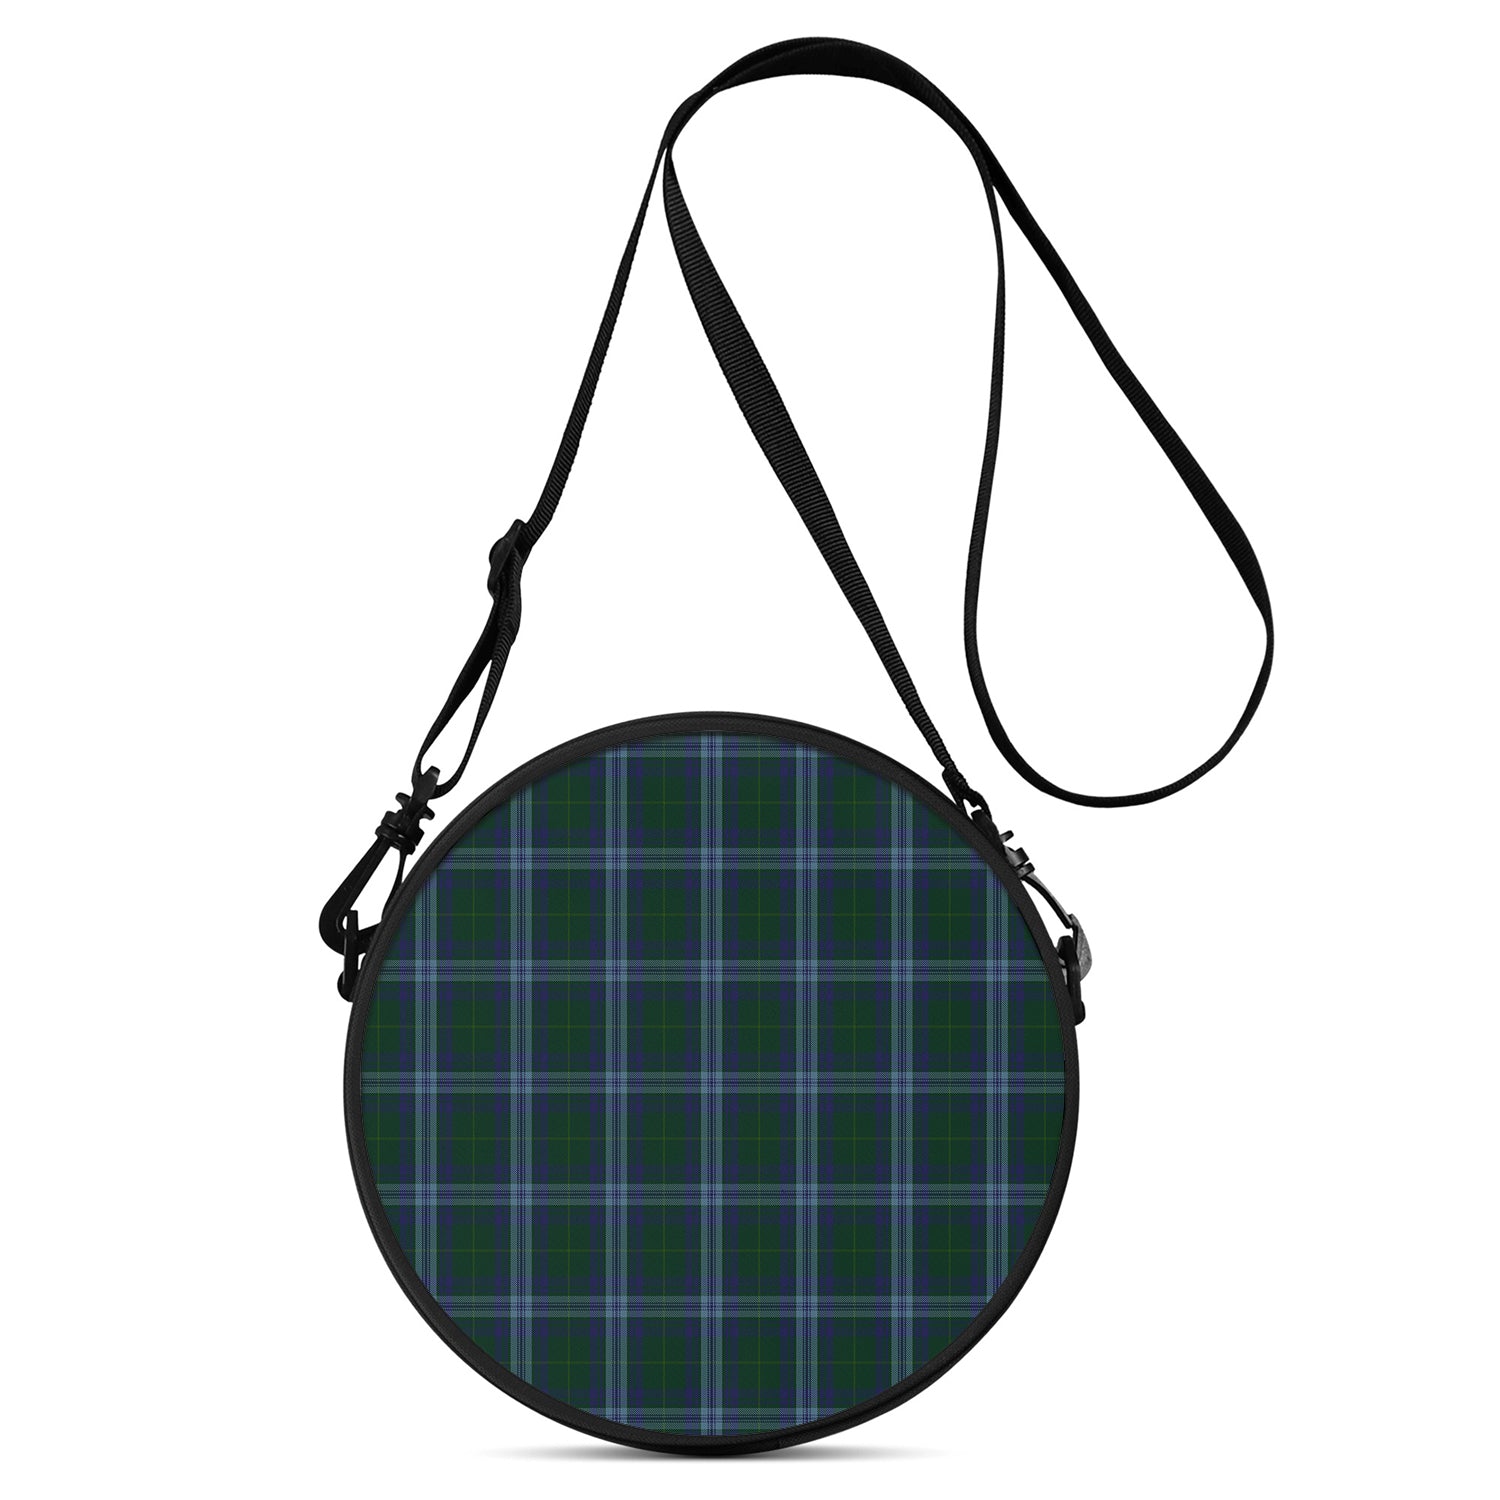 jones-of-wales-tartan-round-satchel-bags